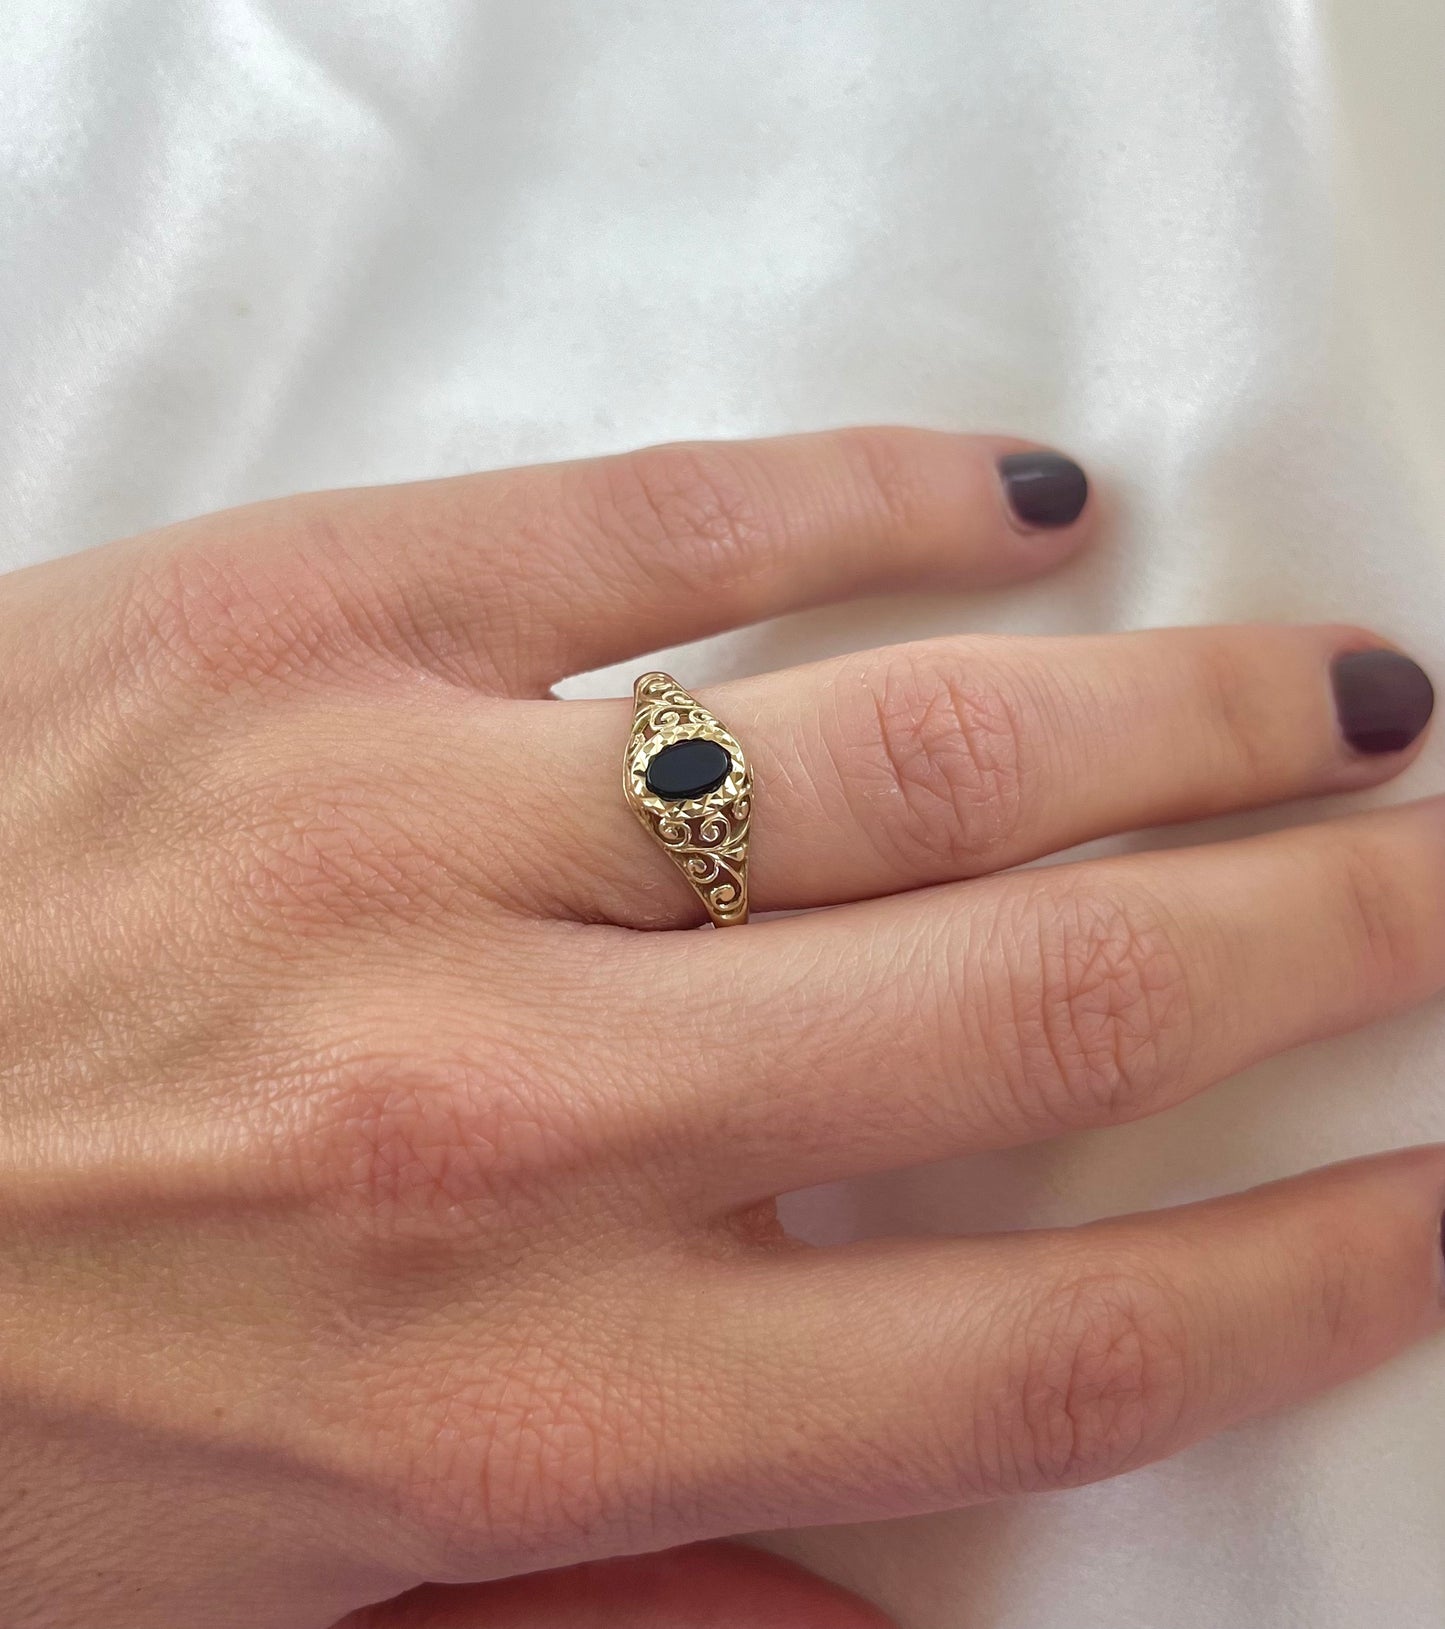 Vintage 9ct Gold Black Onyx Ring, Size O UK